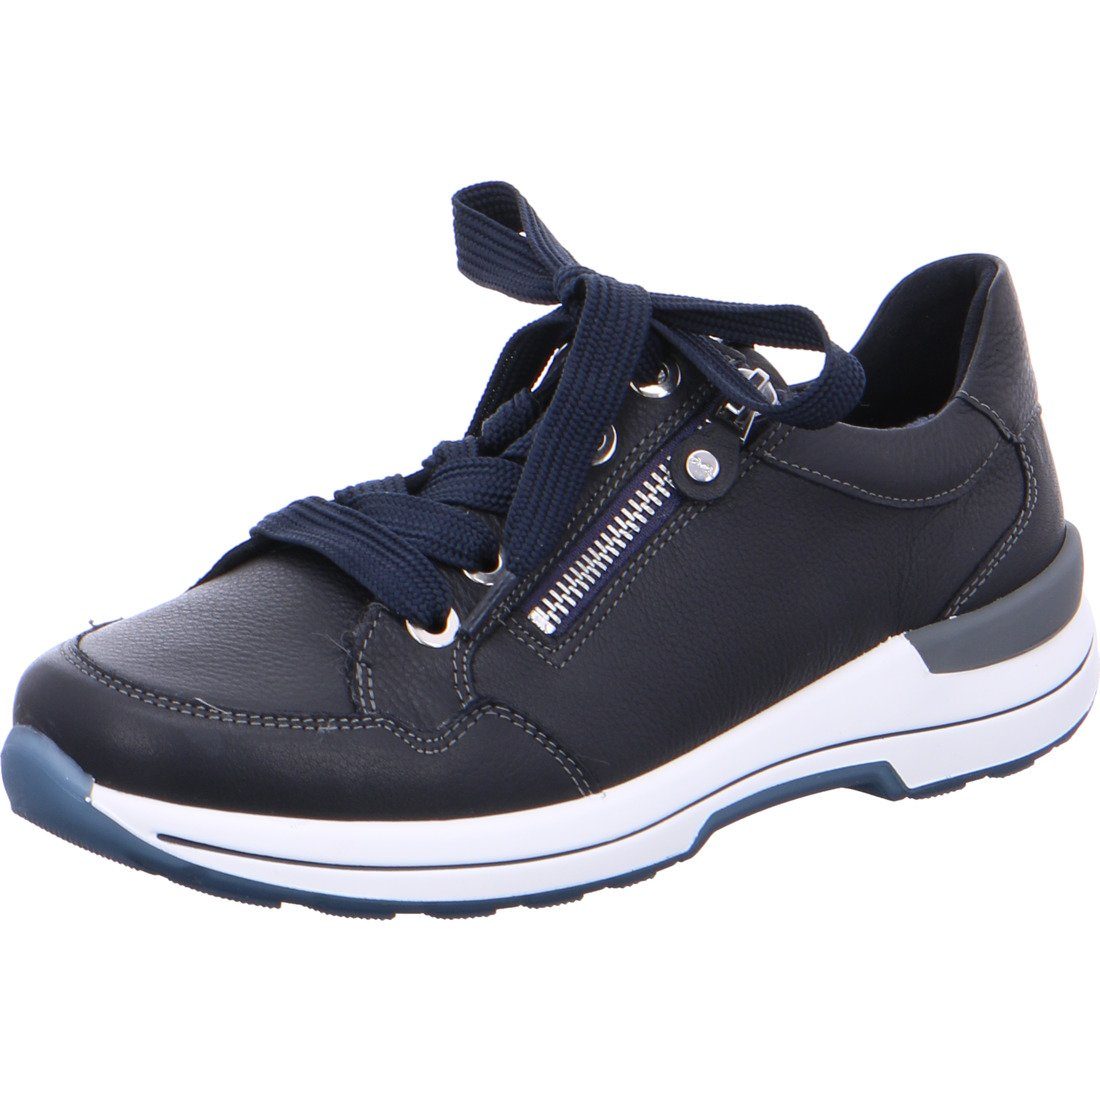 Sneaker Ara - Sneaker 043785 Ara beige Schuhe, Nara Damen Leder